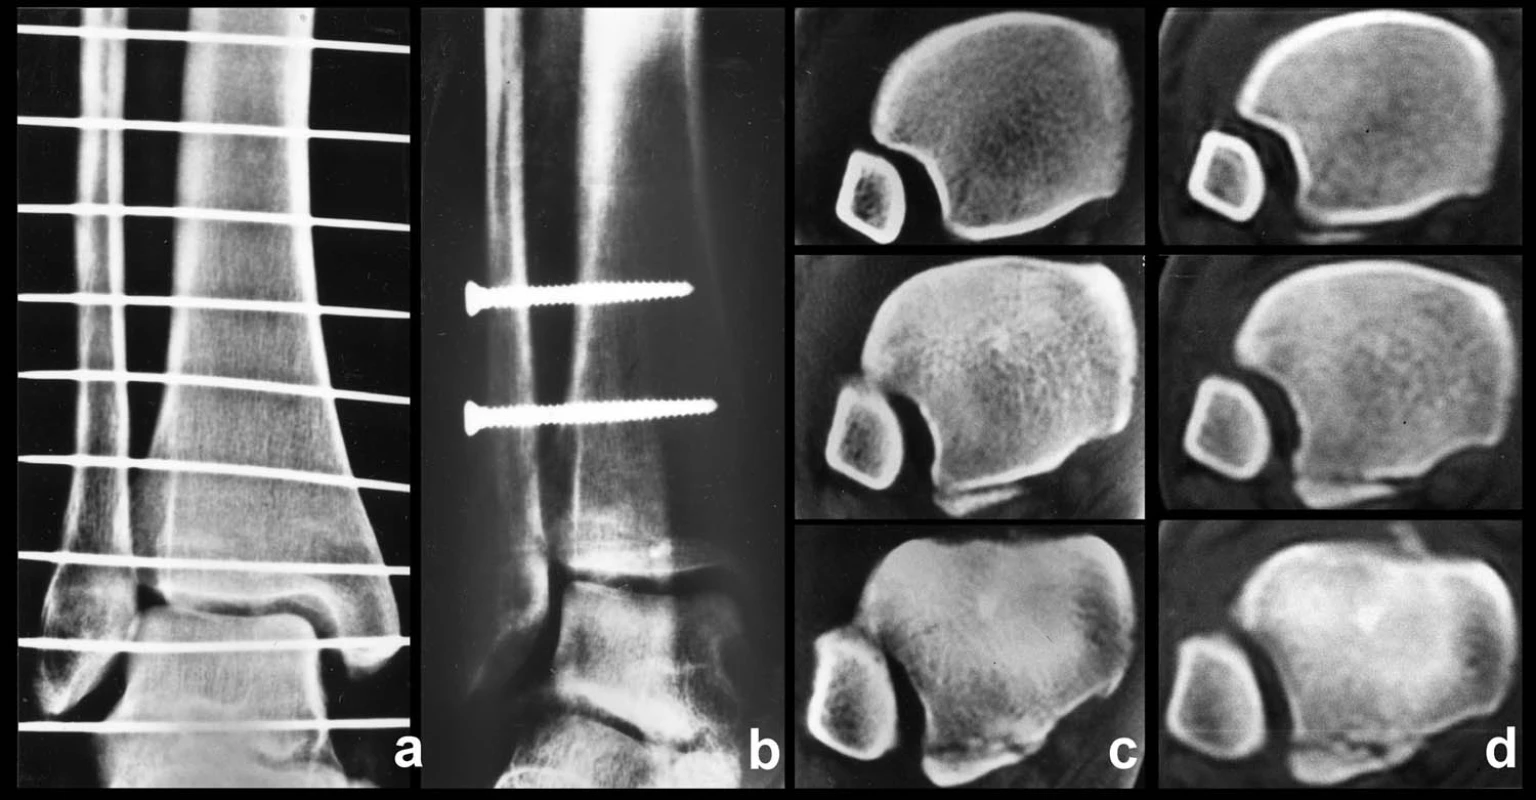 Nedostatečná repozice a fixace fibuly do incisury tibie u Maisenneuveho zlomeniny a – rtg snímek před operaci, b – rtg snímek po operaci, c – CT před operací, d – kontrolní CT po operaci s odlomením zadní hrany typu 1. Ze snímků je patrné, že na rtg přetrvává zkrácení a malrotace fibuly, suprasyndesmální šrouby byly zavedeny příliš vysoko a na pooperačním CT přetrvává subluxace fibuly ventrálně